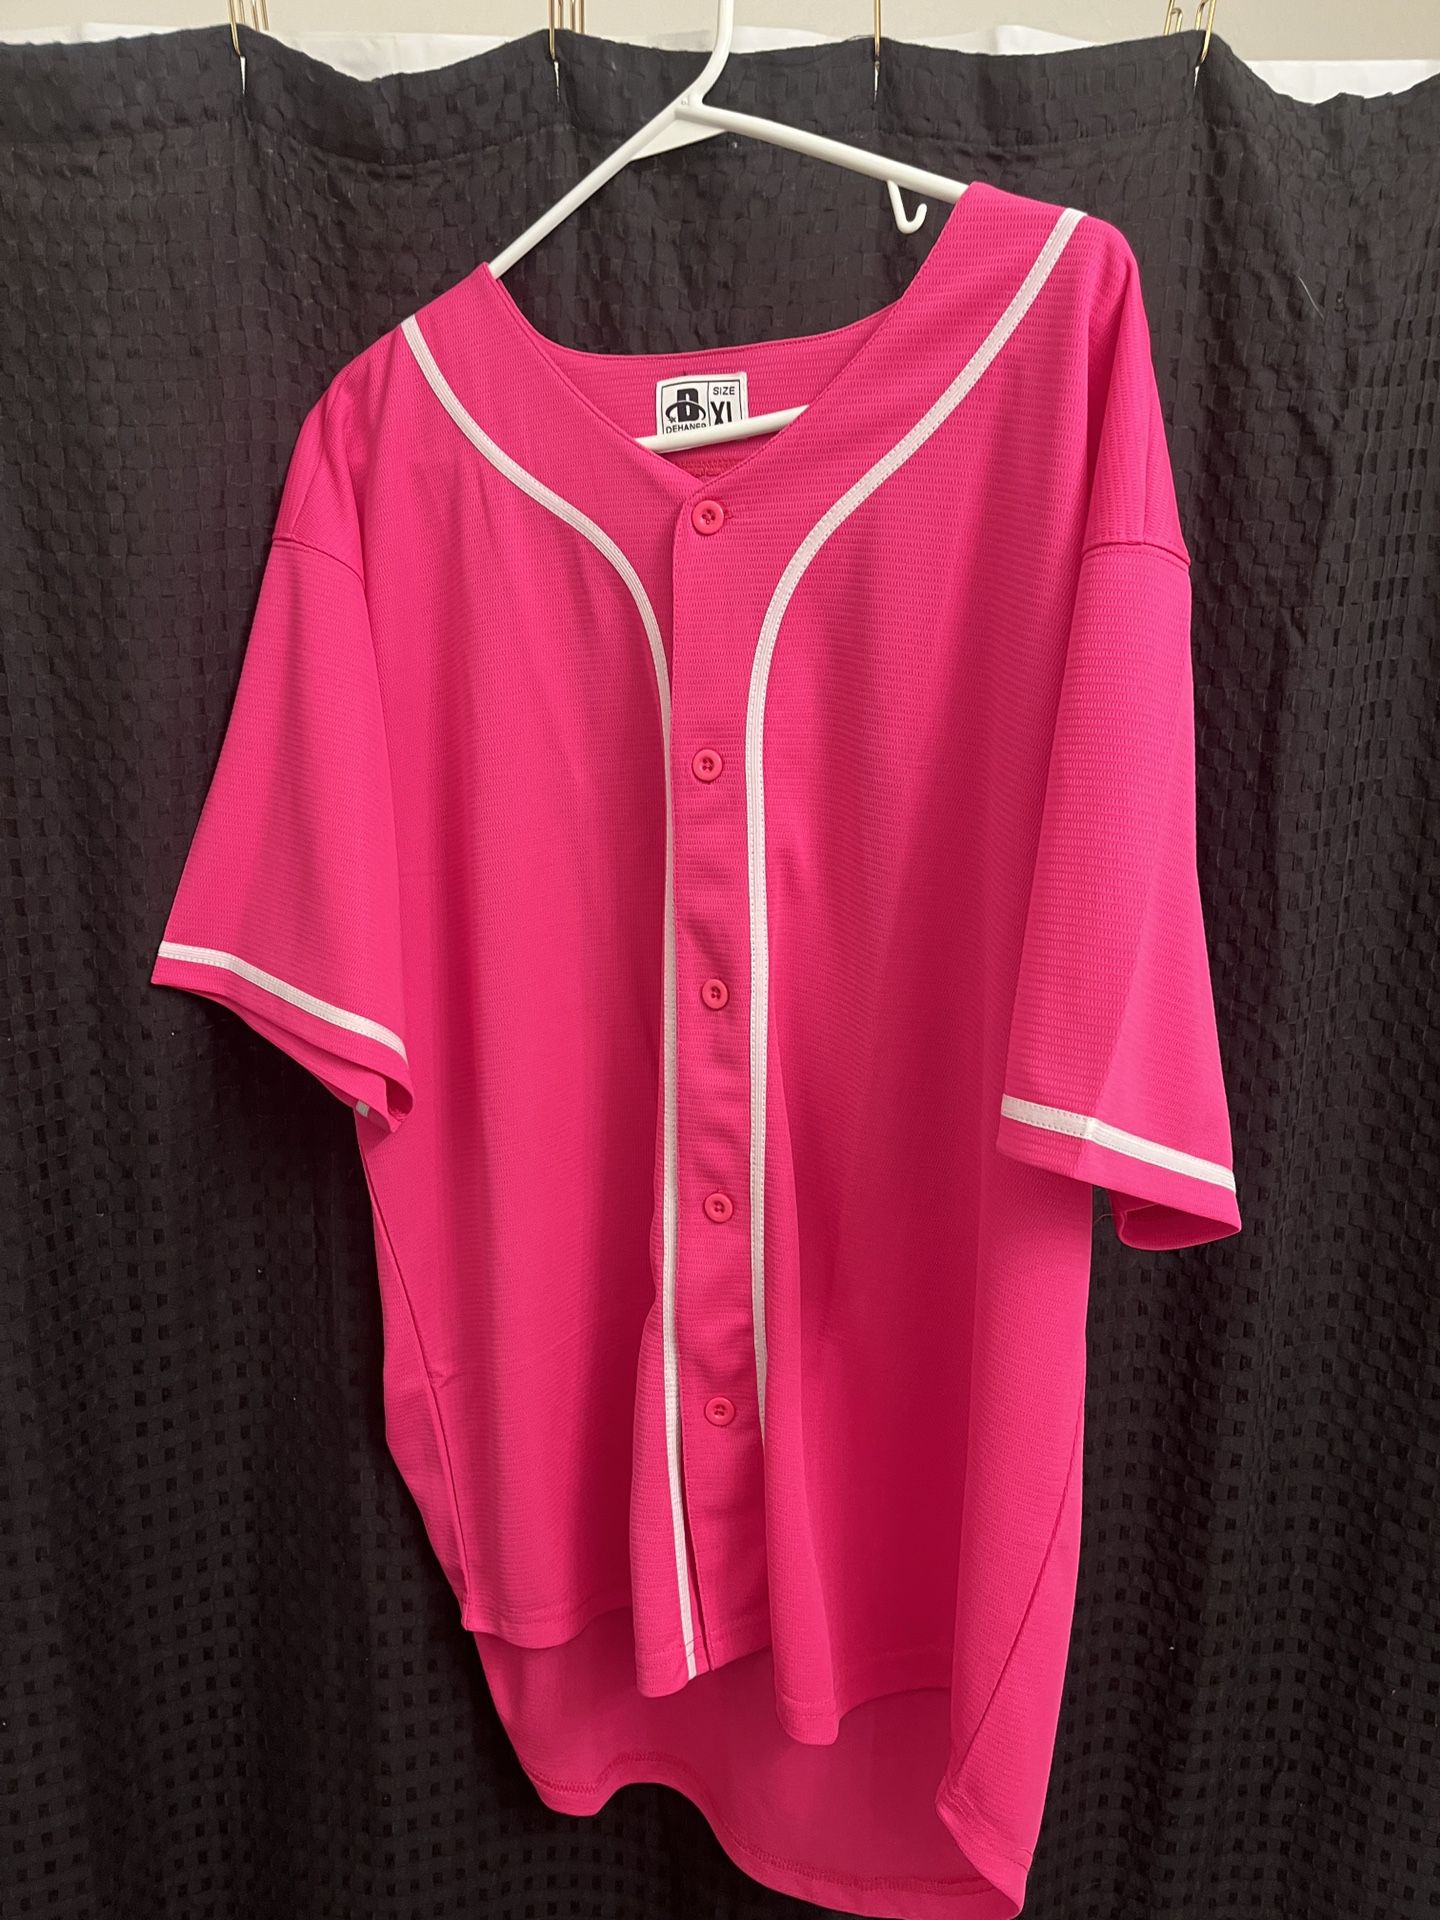 Pink Baseball Jersey / XL